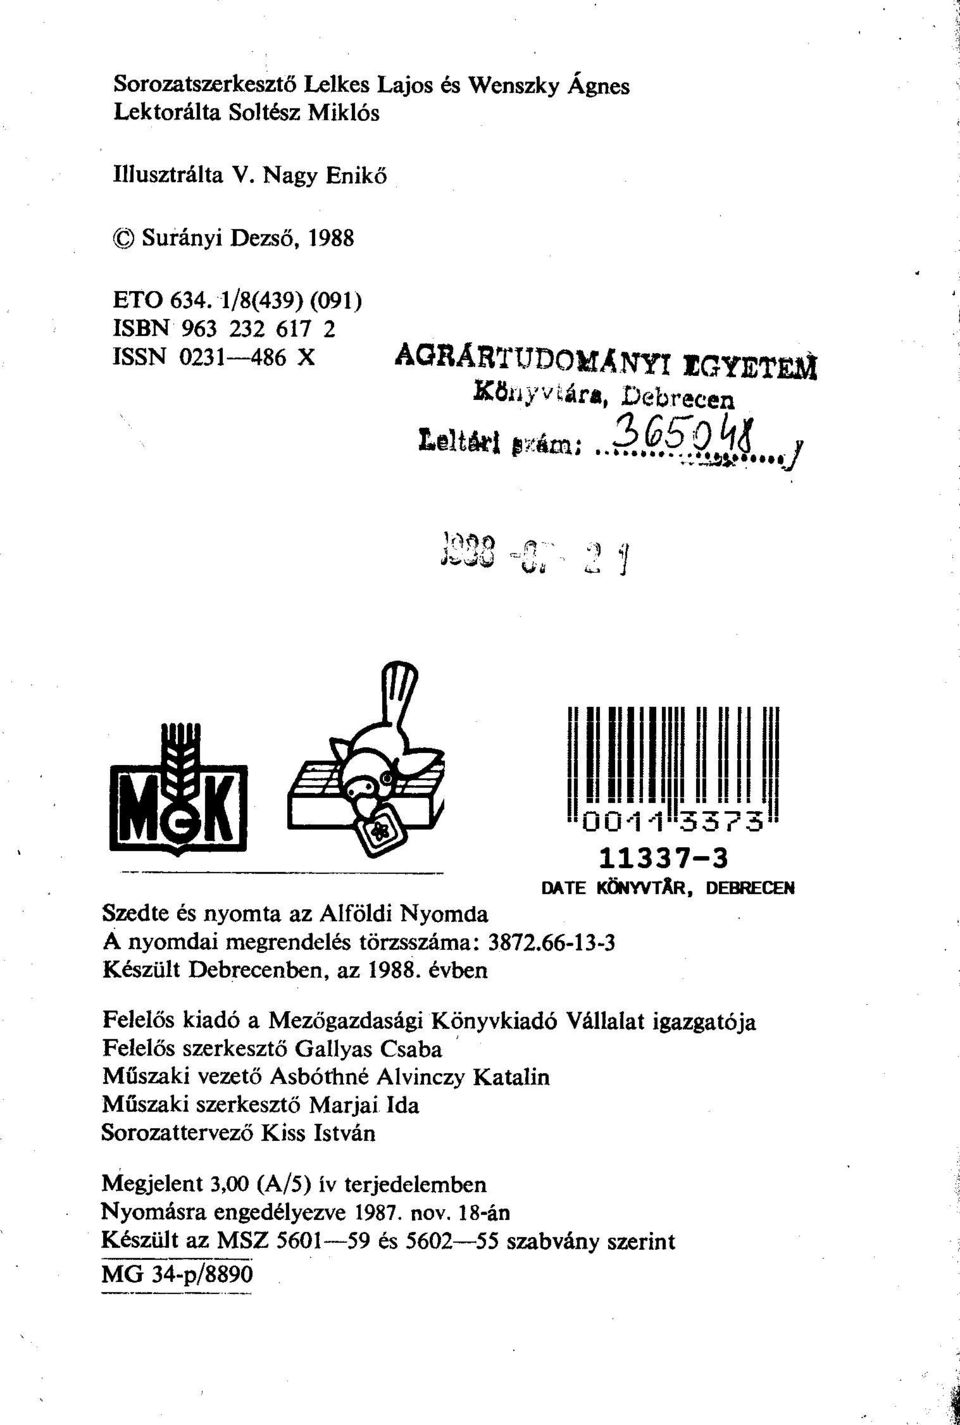 . J Szedte és nyomta az Alföldi Nyomda A nyomdai megrendelés törzsszáma: 3872.66-13-3 Készült Debrecenben, az 1988. évben II~~IJI.